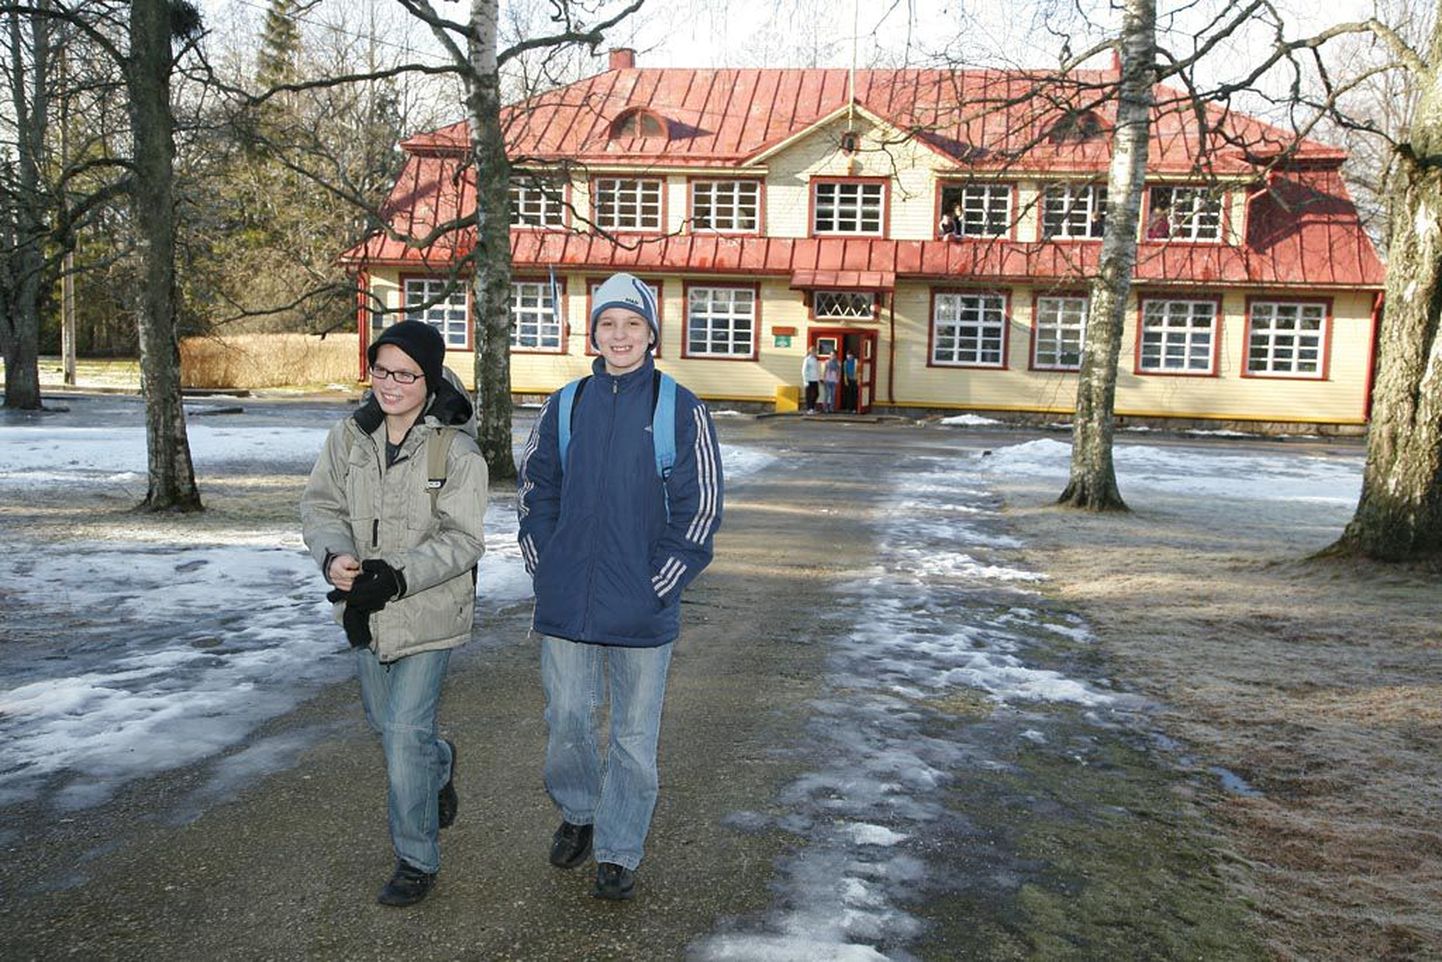 Aasta tagasi jäid Metsapoole põhikooli ees fotosilma ette nüüdseks 7. klassi poisid Janre Koort ja Egert Vaher. Võimlat tuleb neil veel vähemalt aasta oodata.